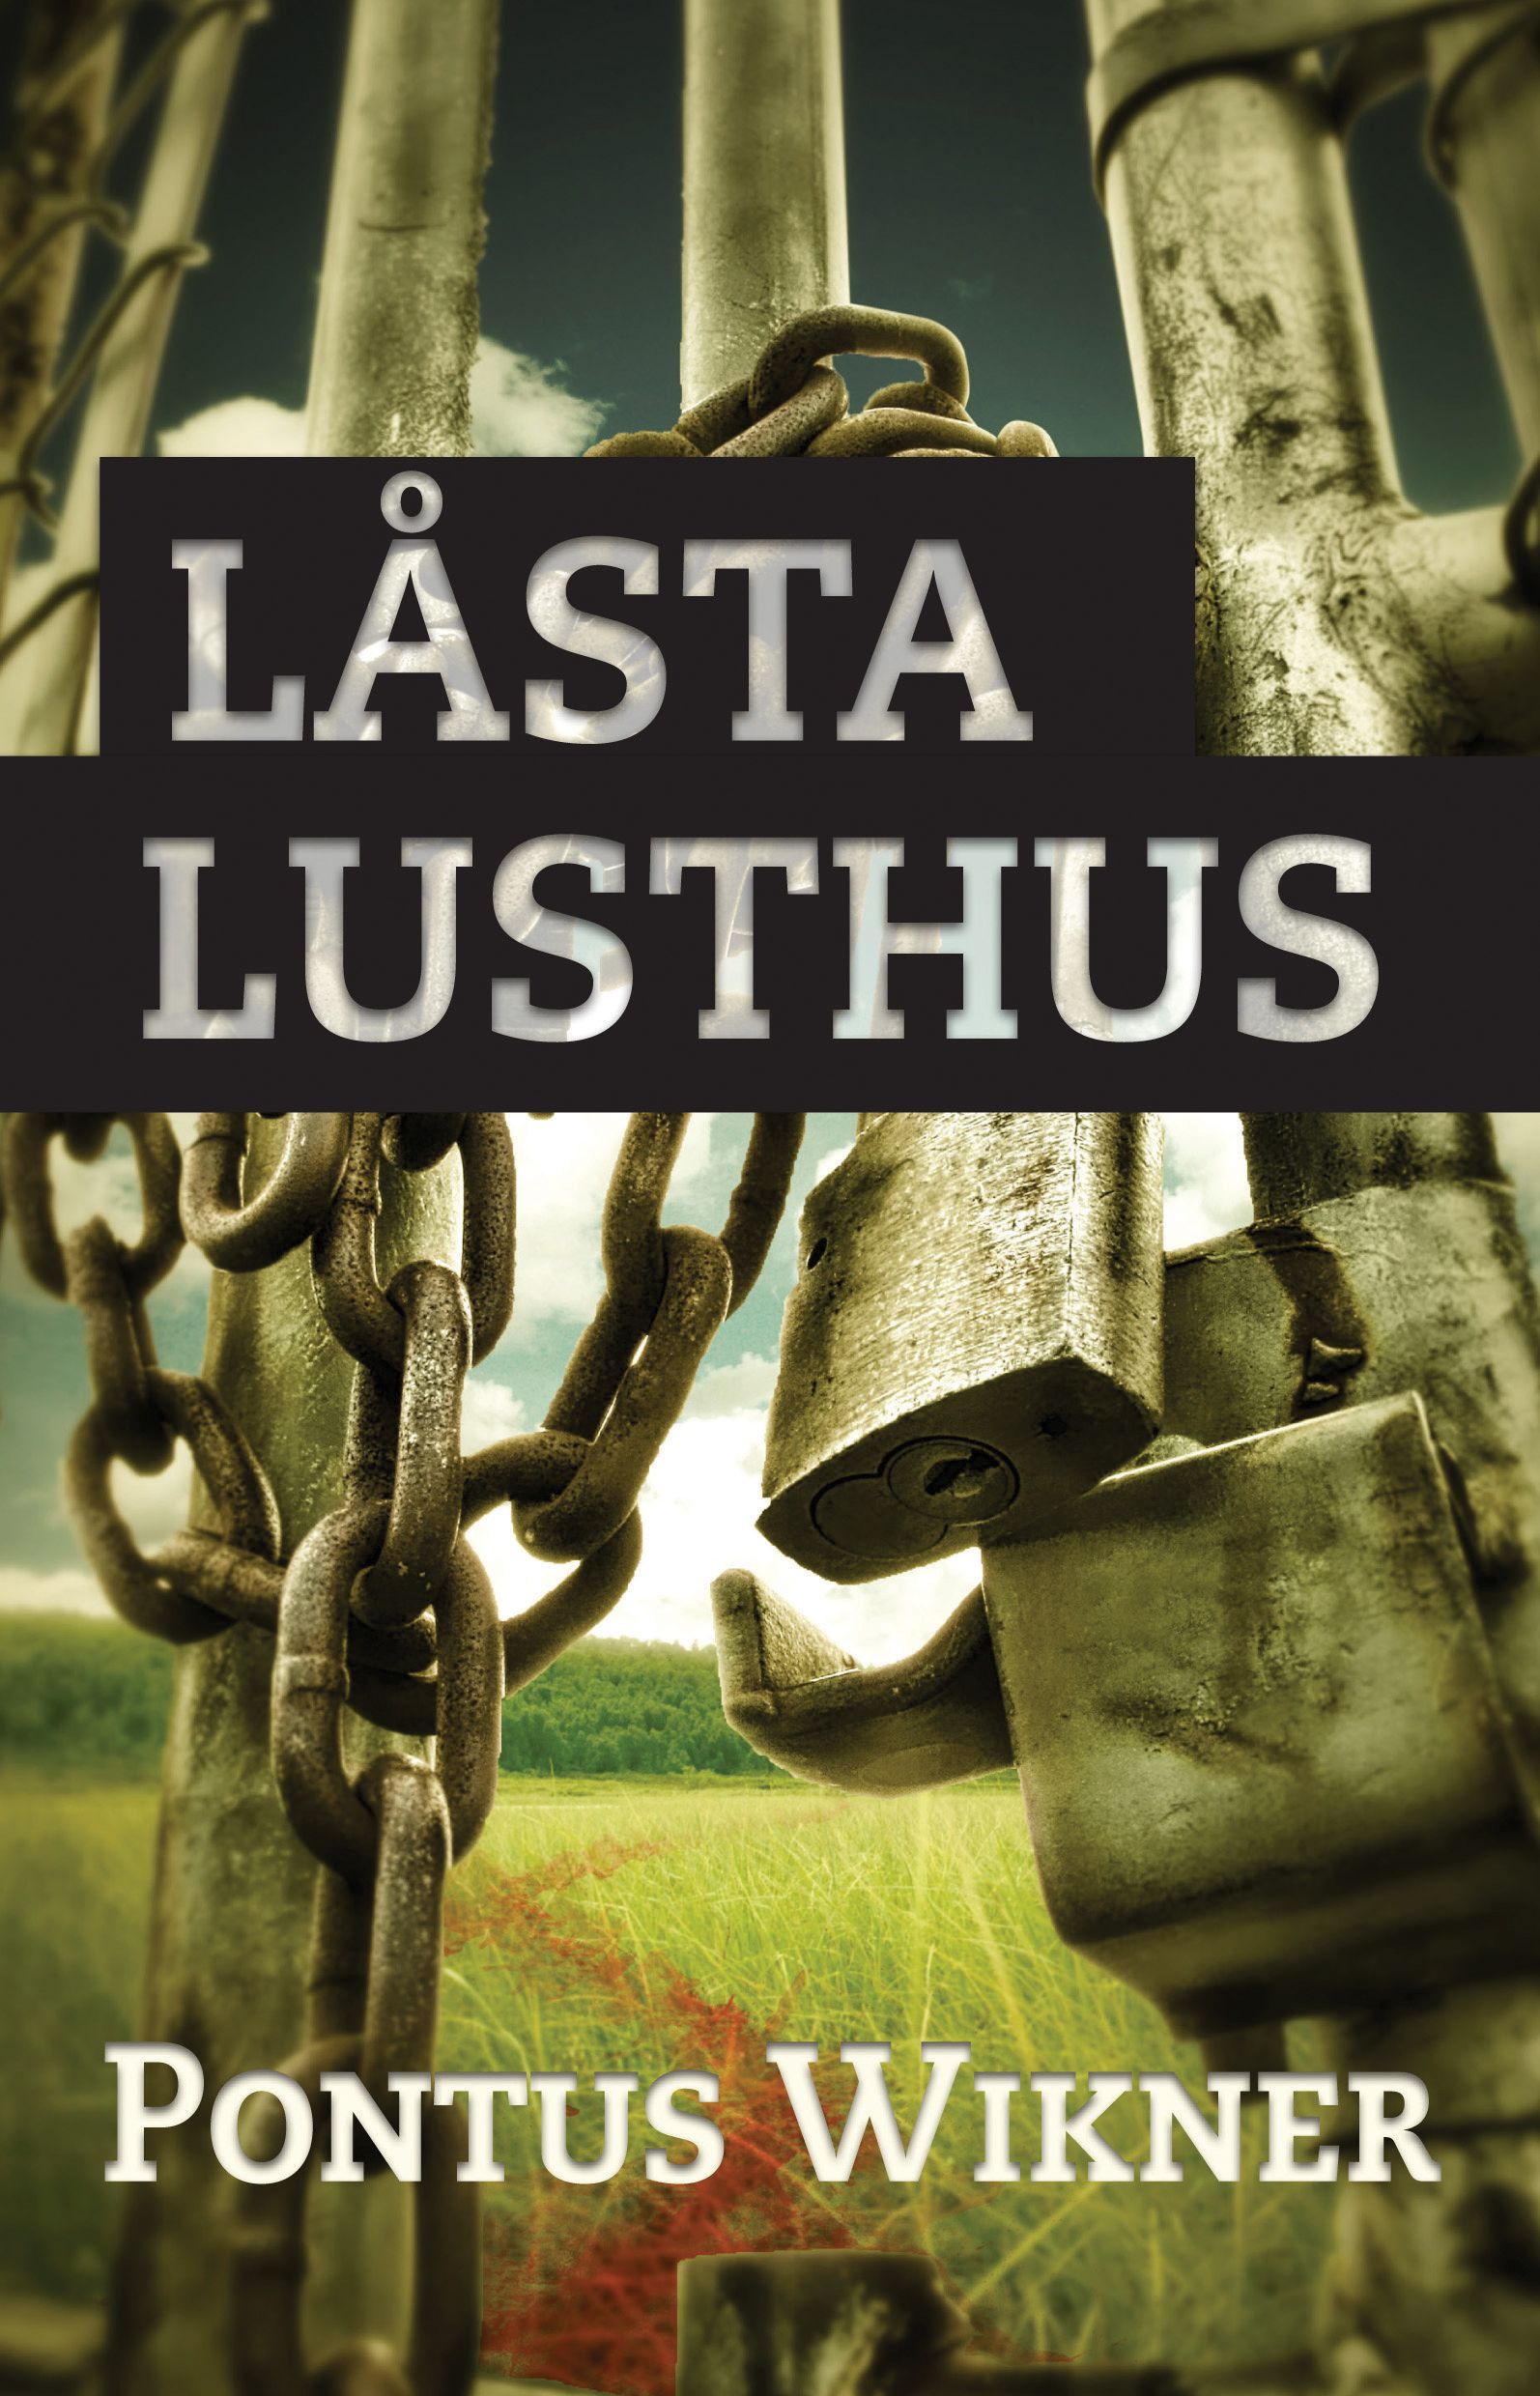 Låsta lusthus, e-bok av Pontus Wikner